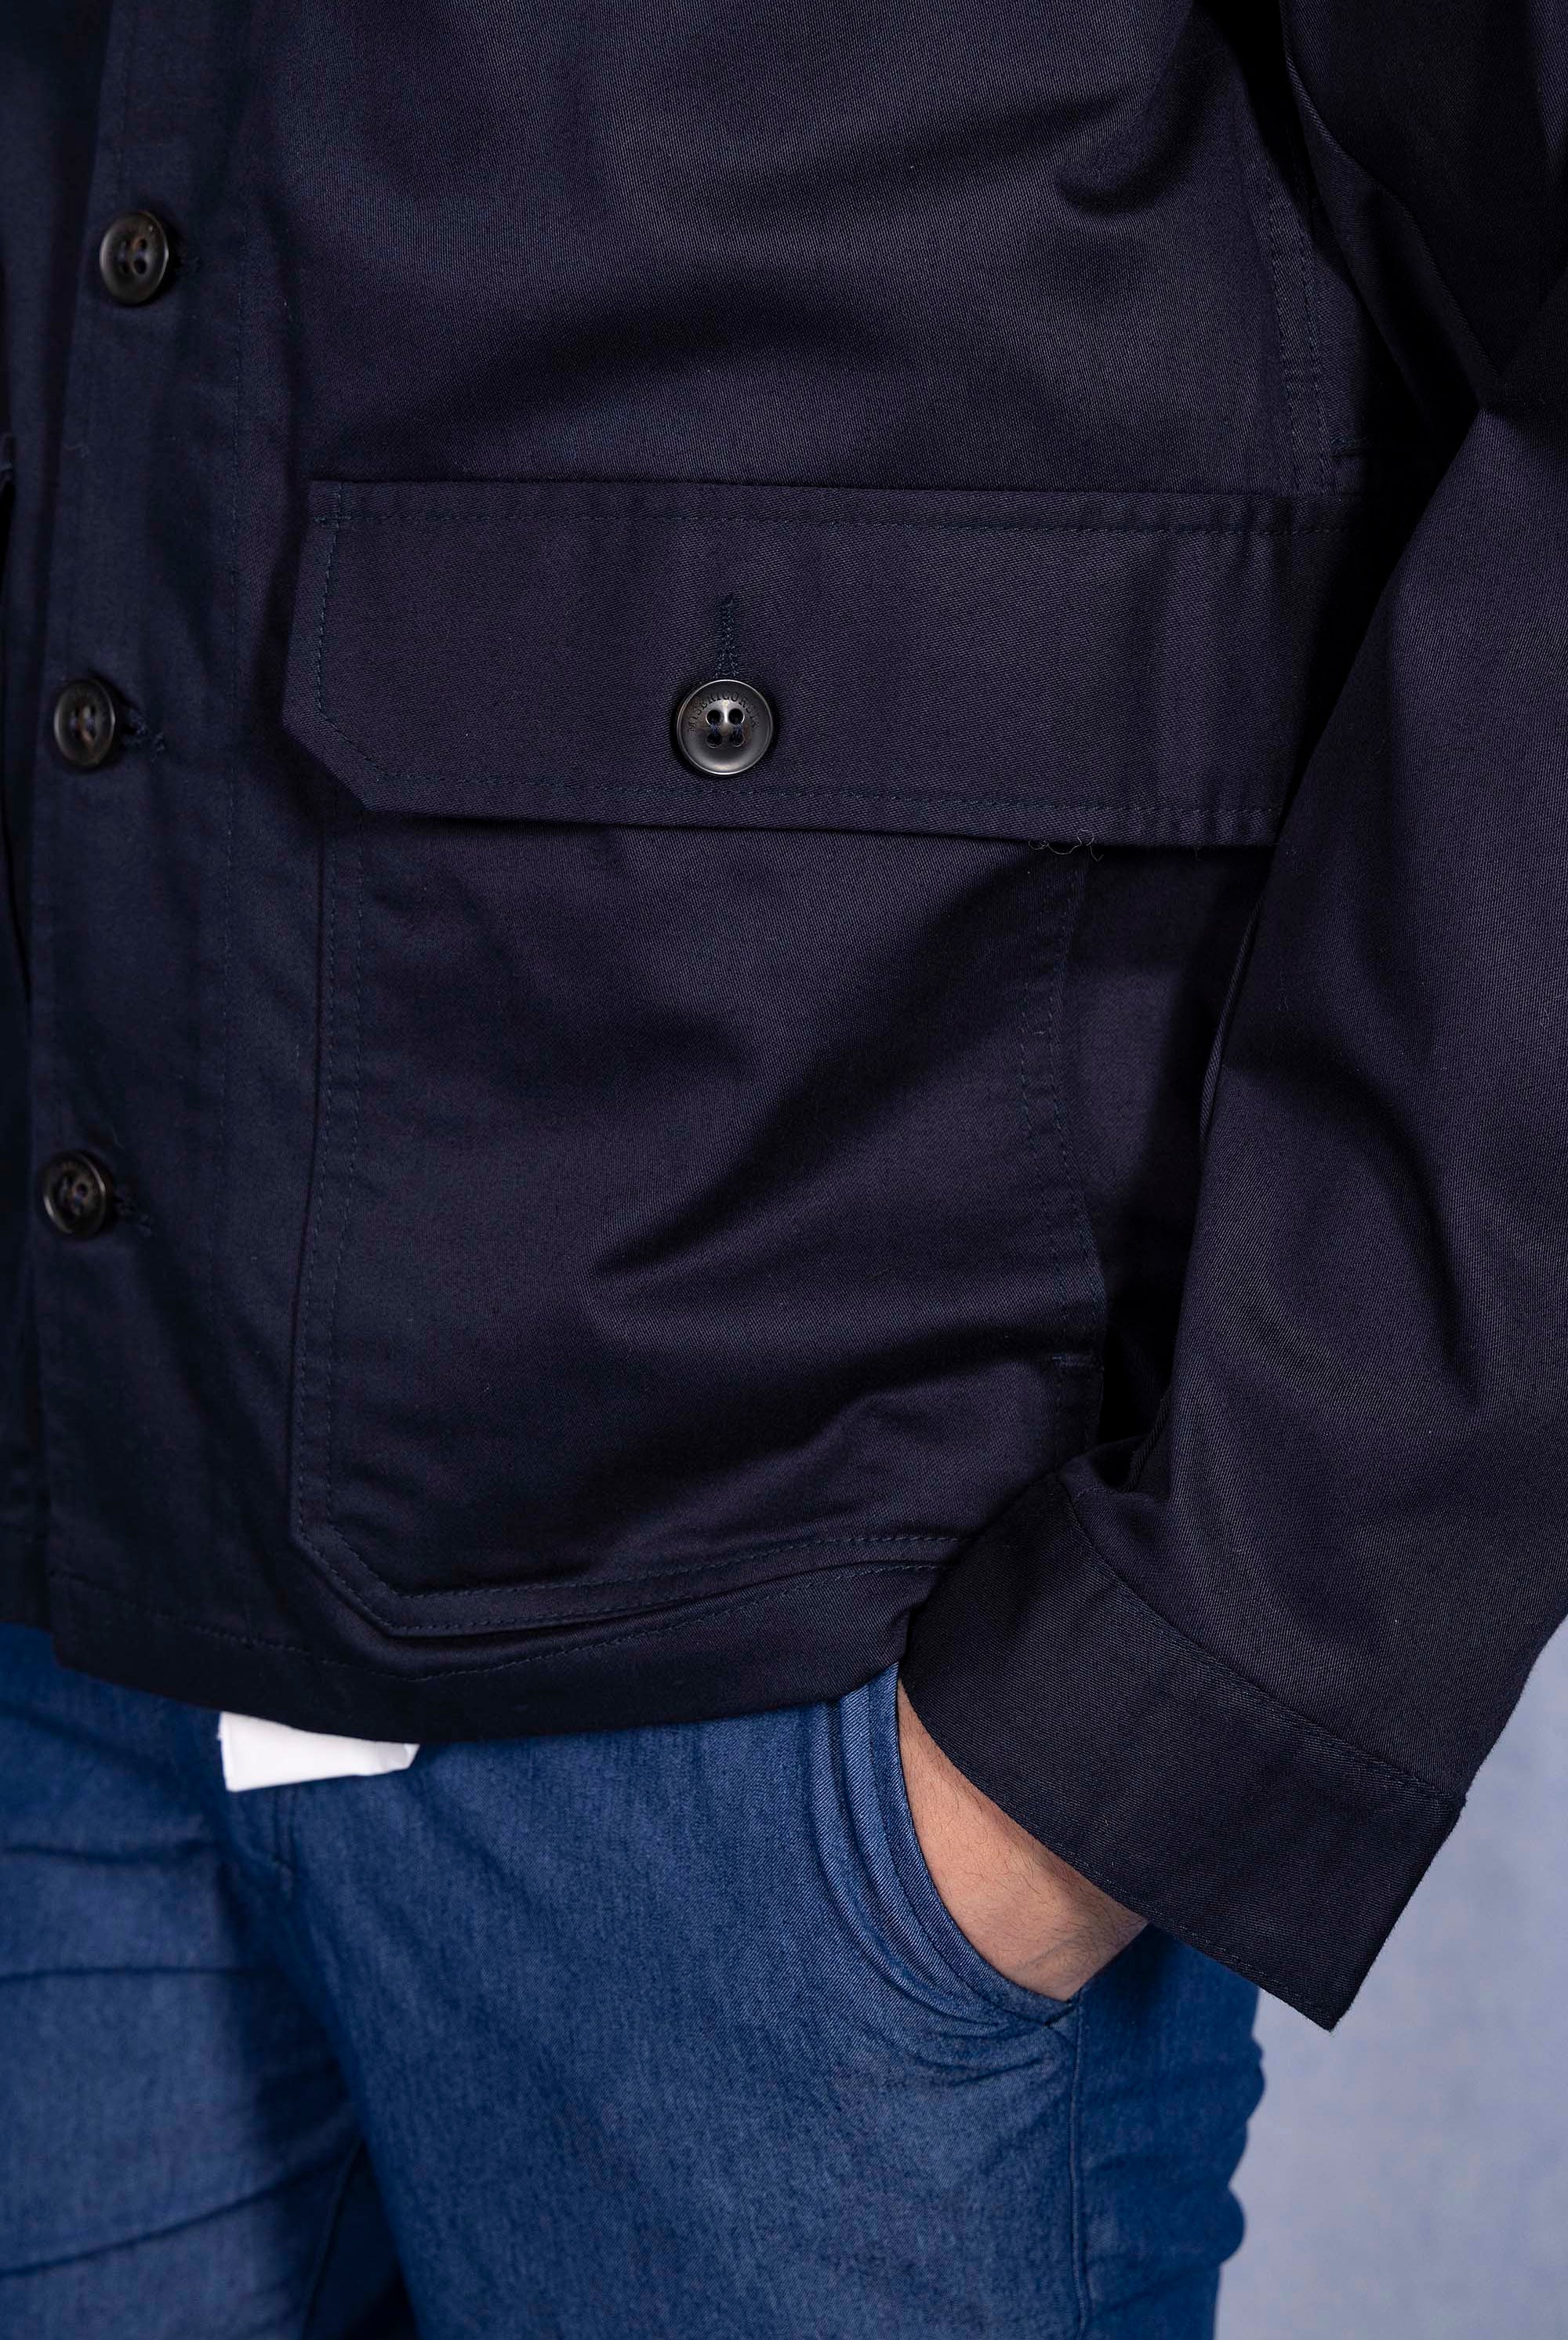 Manteau Matias Bleu Marine outerwear résistant et authentique avec une finition impeccable